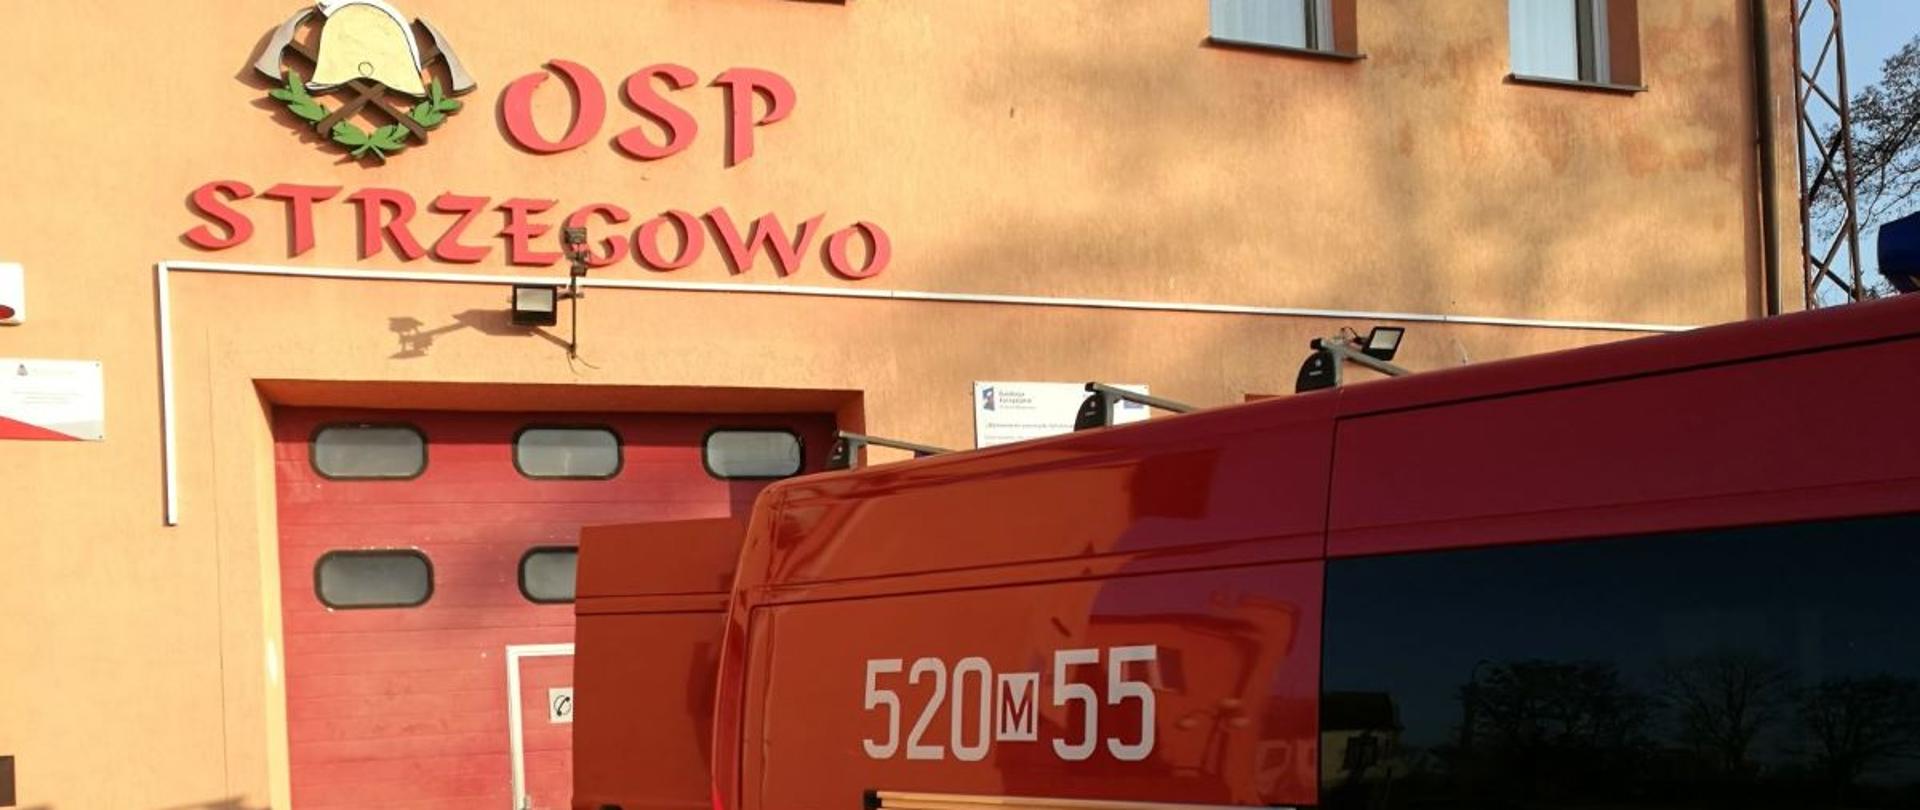 Przed budynkiem remizy OSP Strzegowo stoi zaparkowany pojazd pożarniczy typu BUS, który ma otwarte tylne drzwi. 